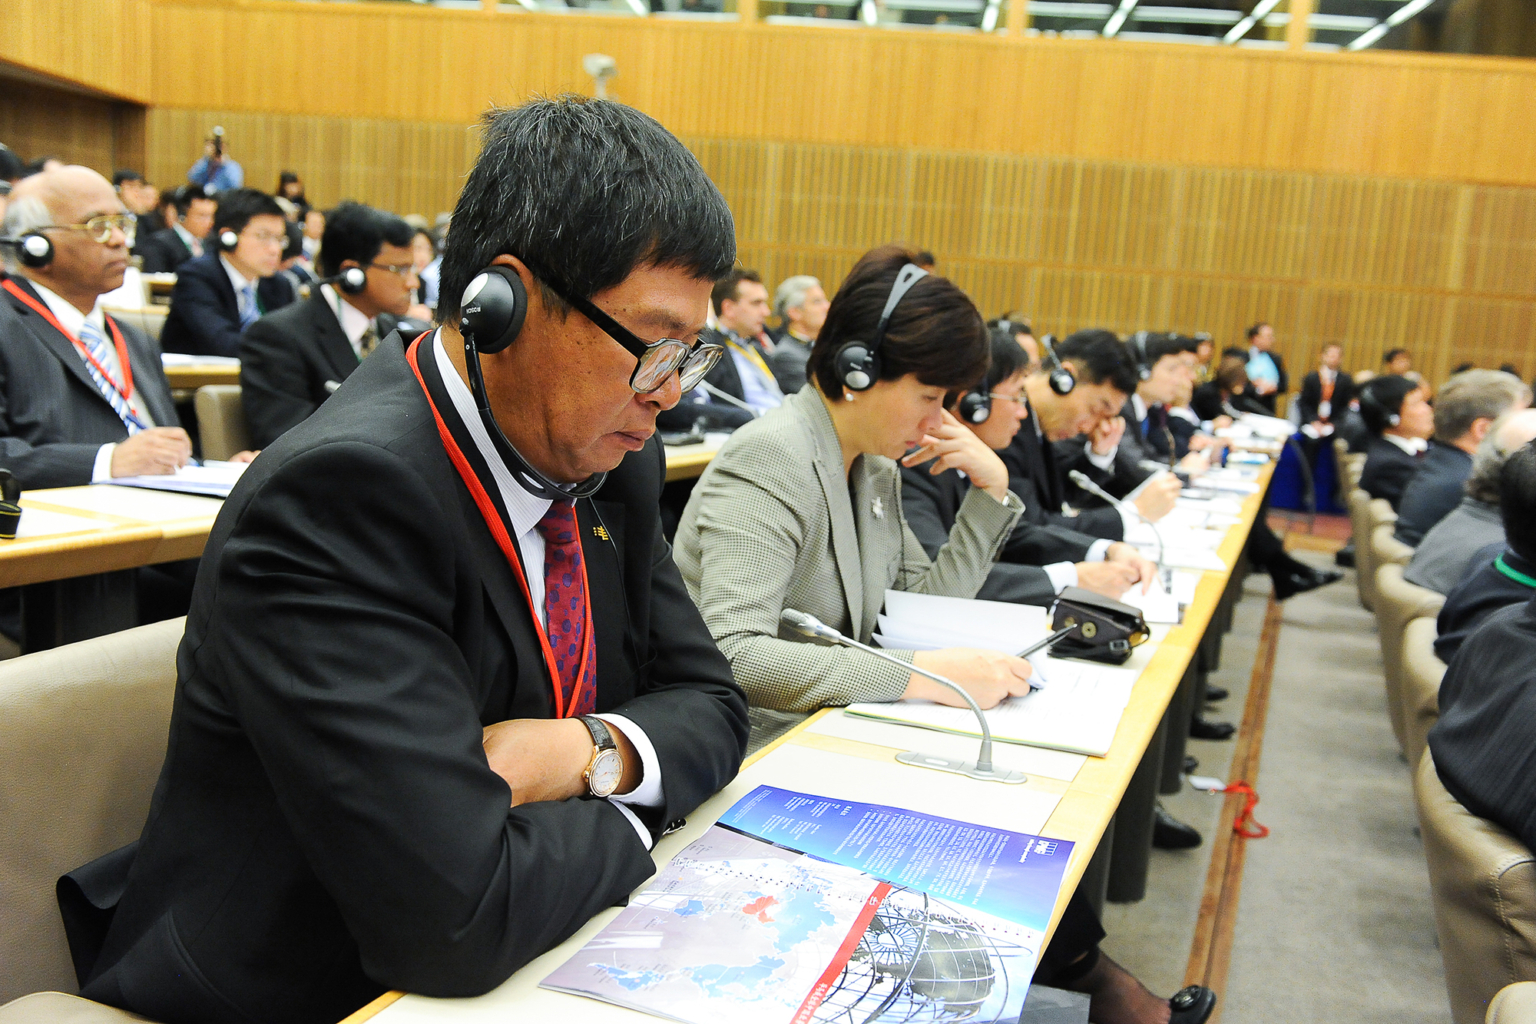 Illustration photo décrivant la concentration des participants à l'événement